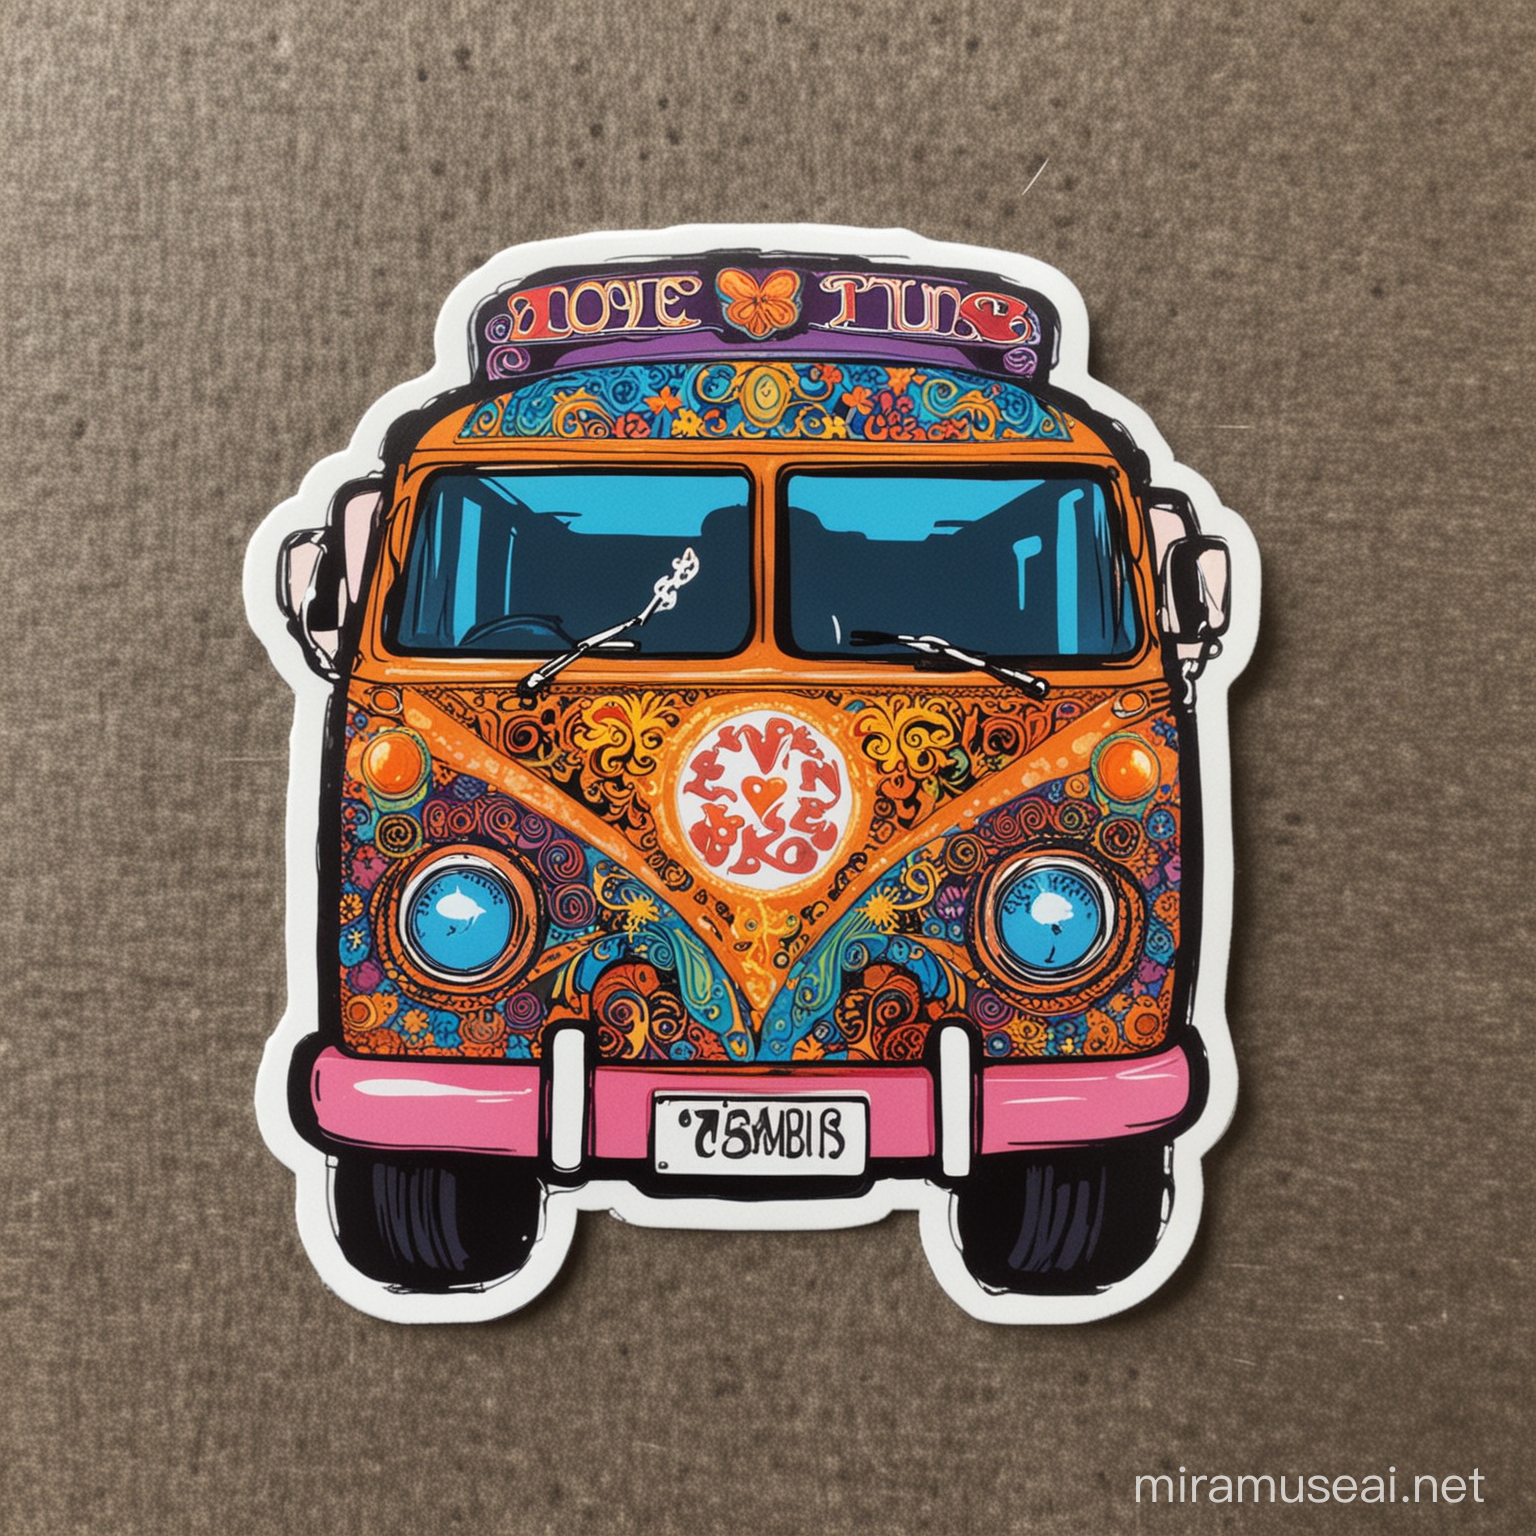 Hippie ,Trendy bus Sticker ,love, 60s 70s  Groovy  Bright Fun 